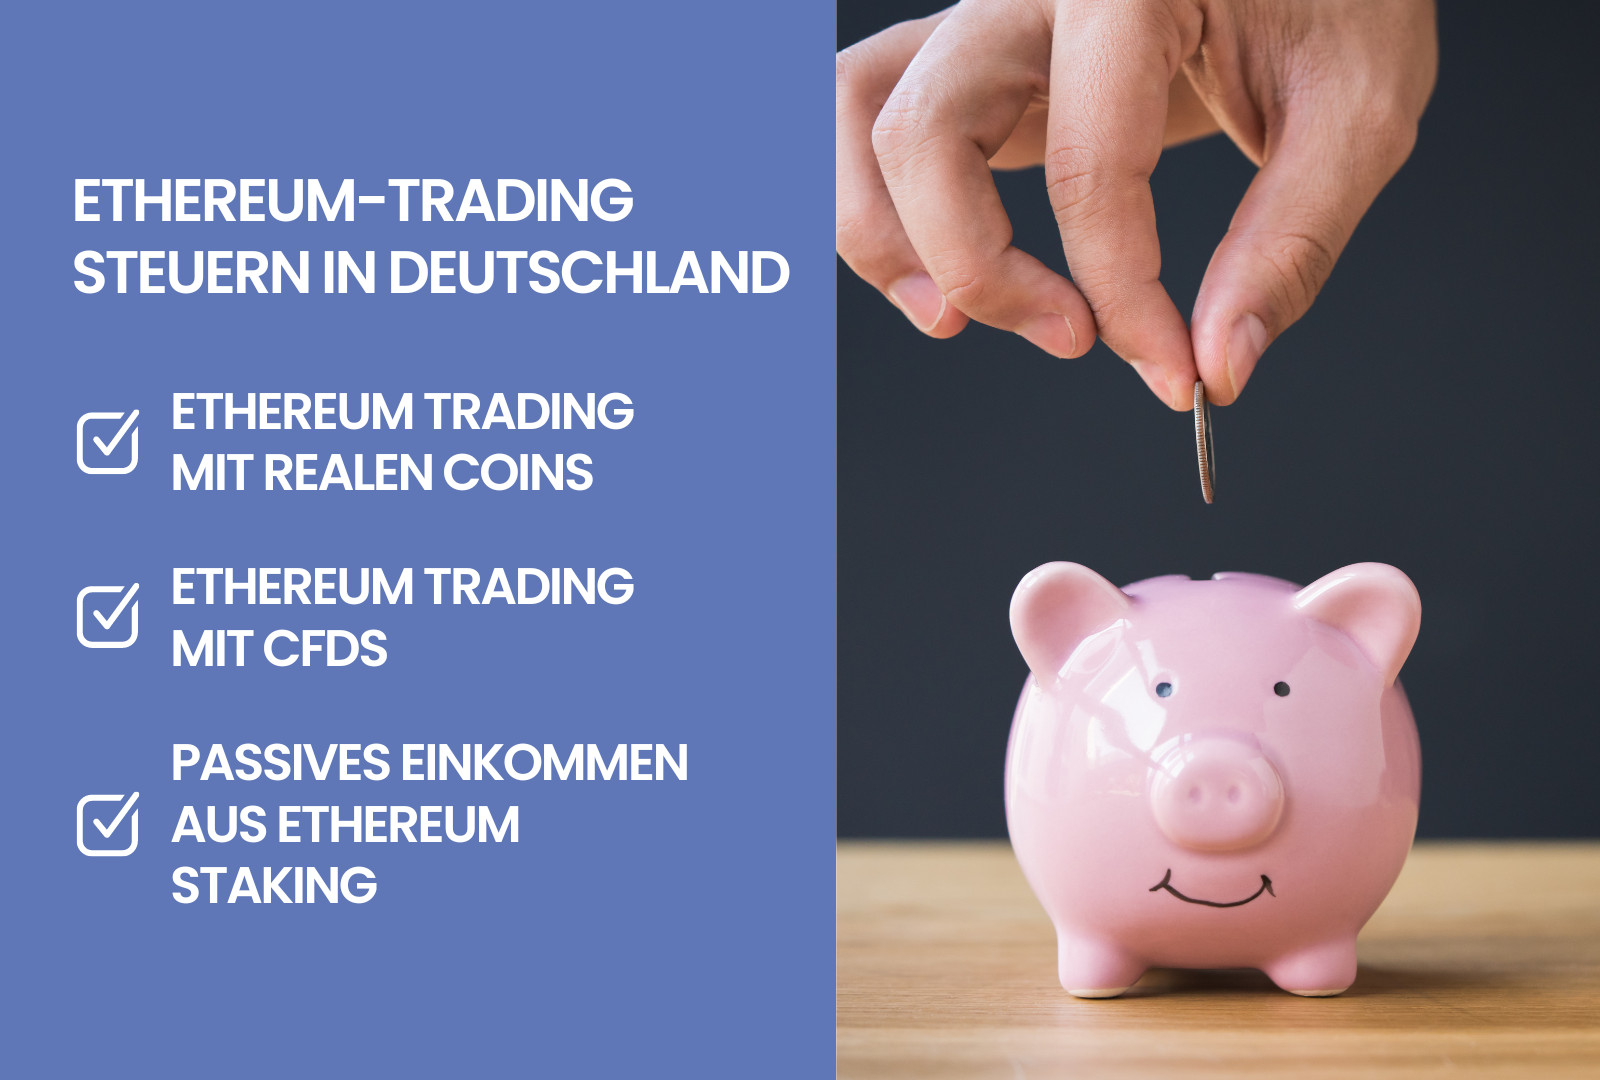 Ethereum-Trading Steuern in Deutschland